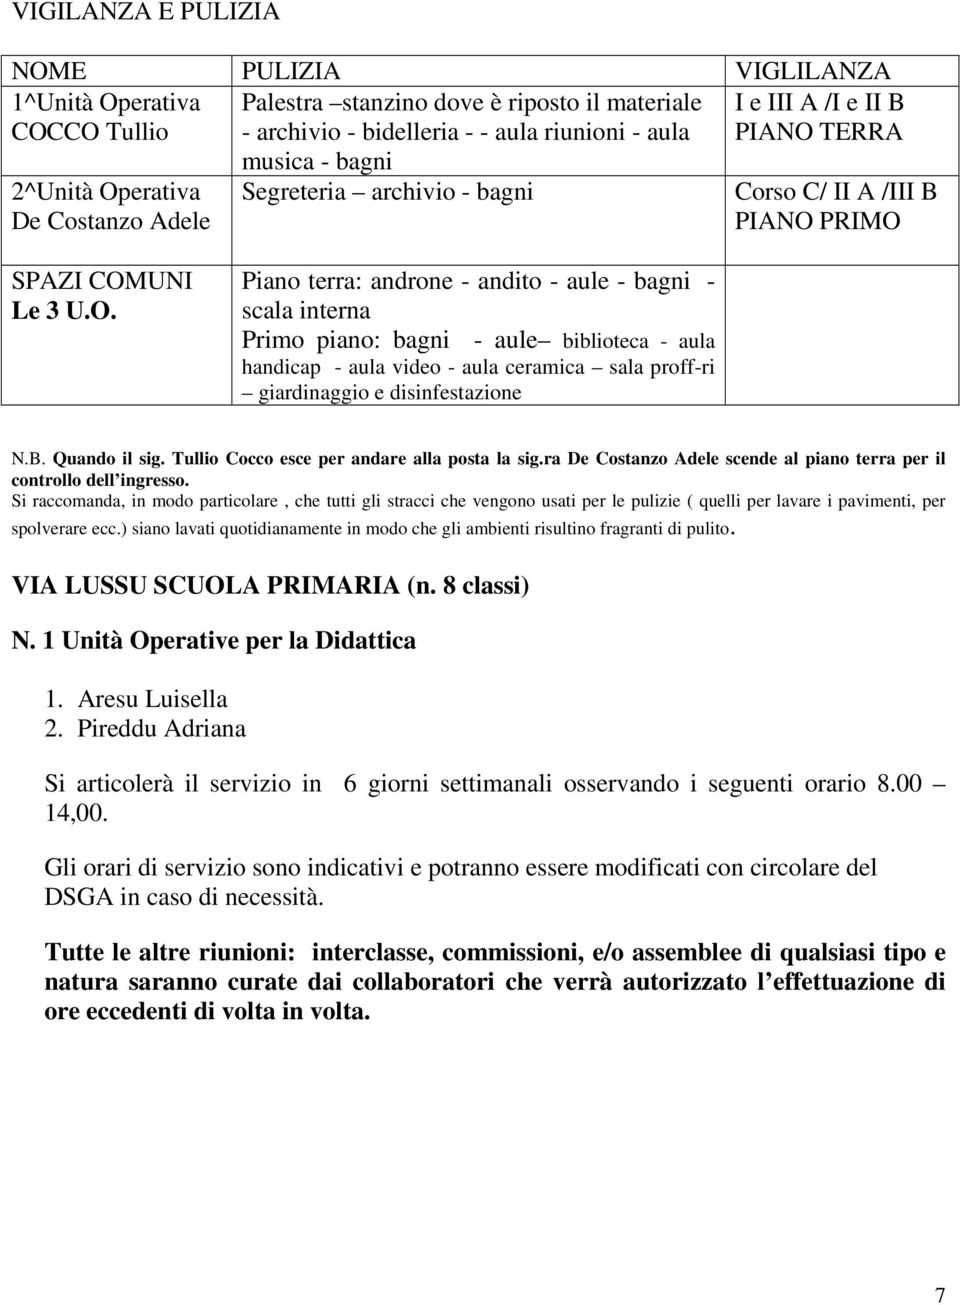 erativa De Costanzo Adele musica - bagni Segreteria archivio - bagni Corso C/ II A /III B PIANO 